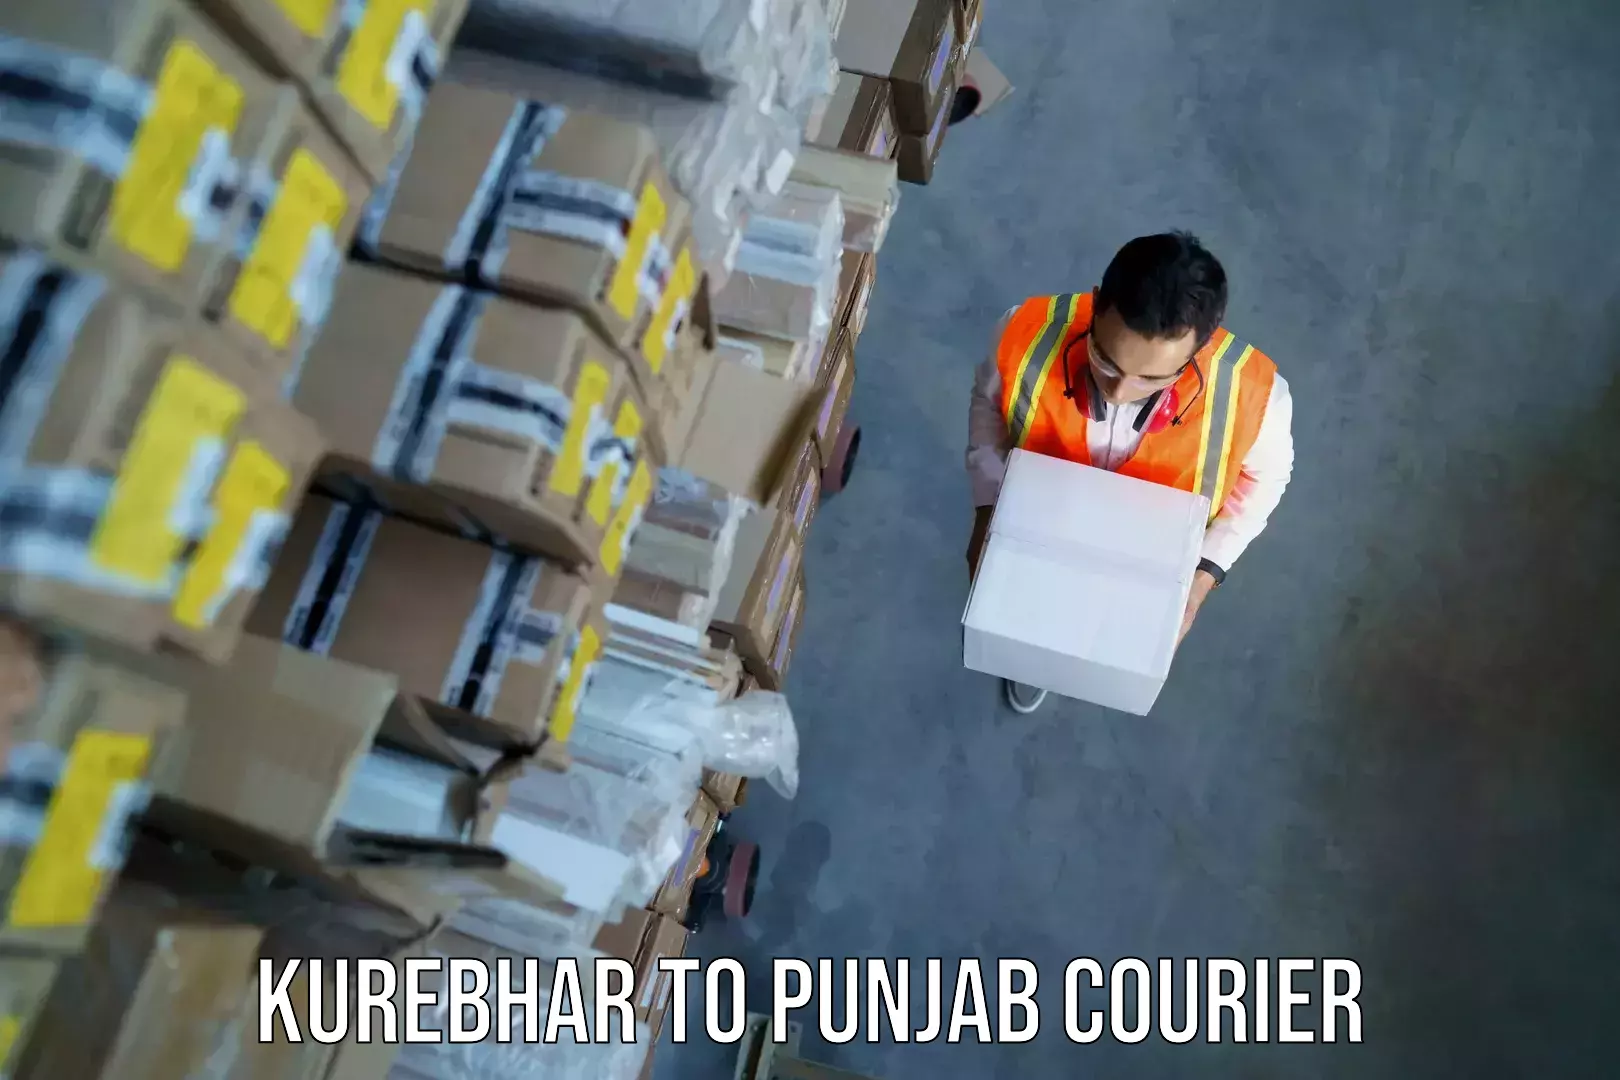 Baggage transport scheduler Kurebhar to Punjab